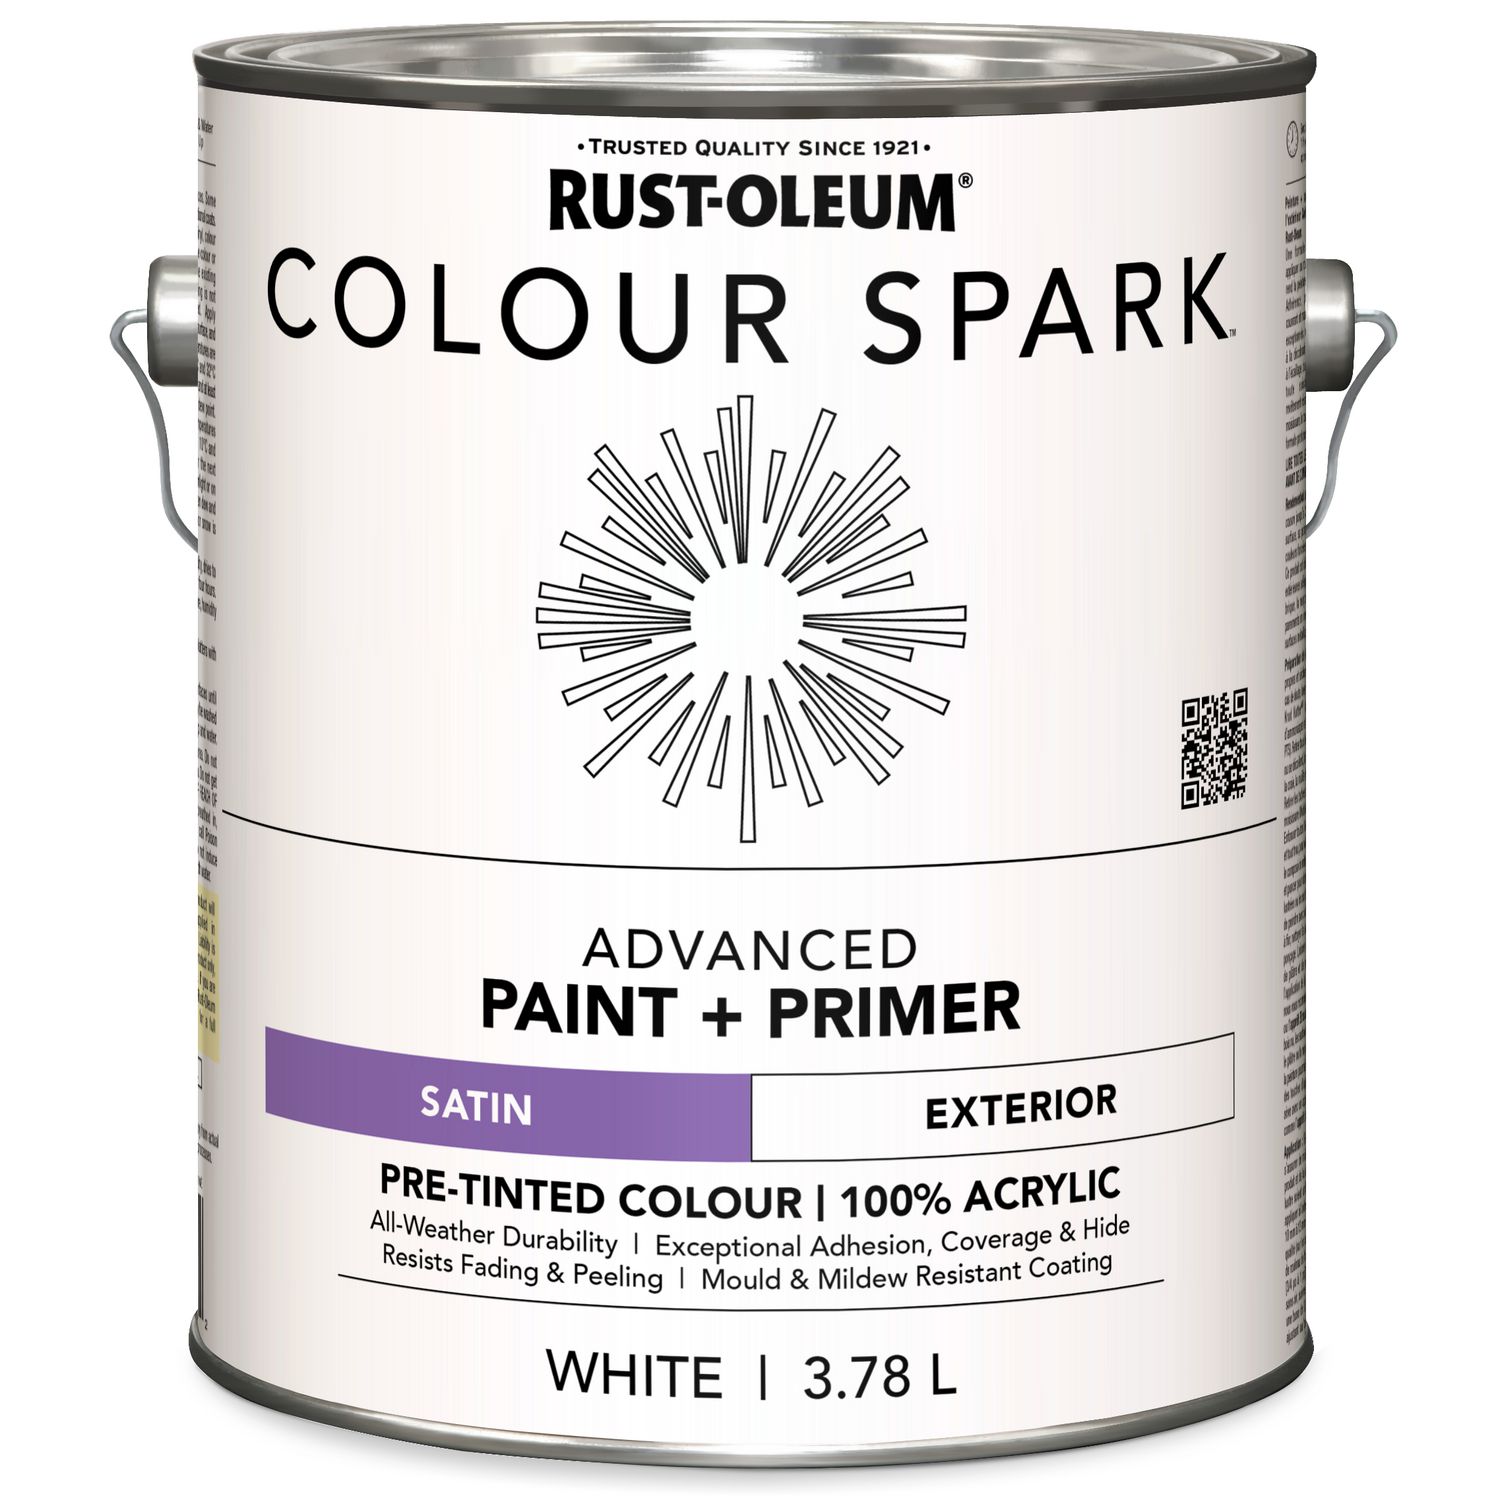 RUST-OLEUM COLOUR SPARK Peinture murale d'intérieur Colour Spark